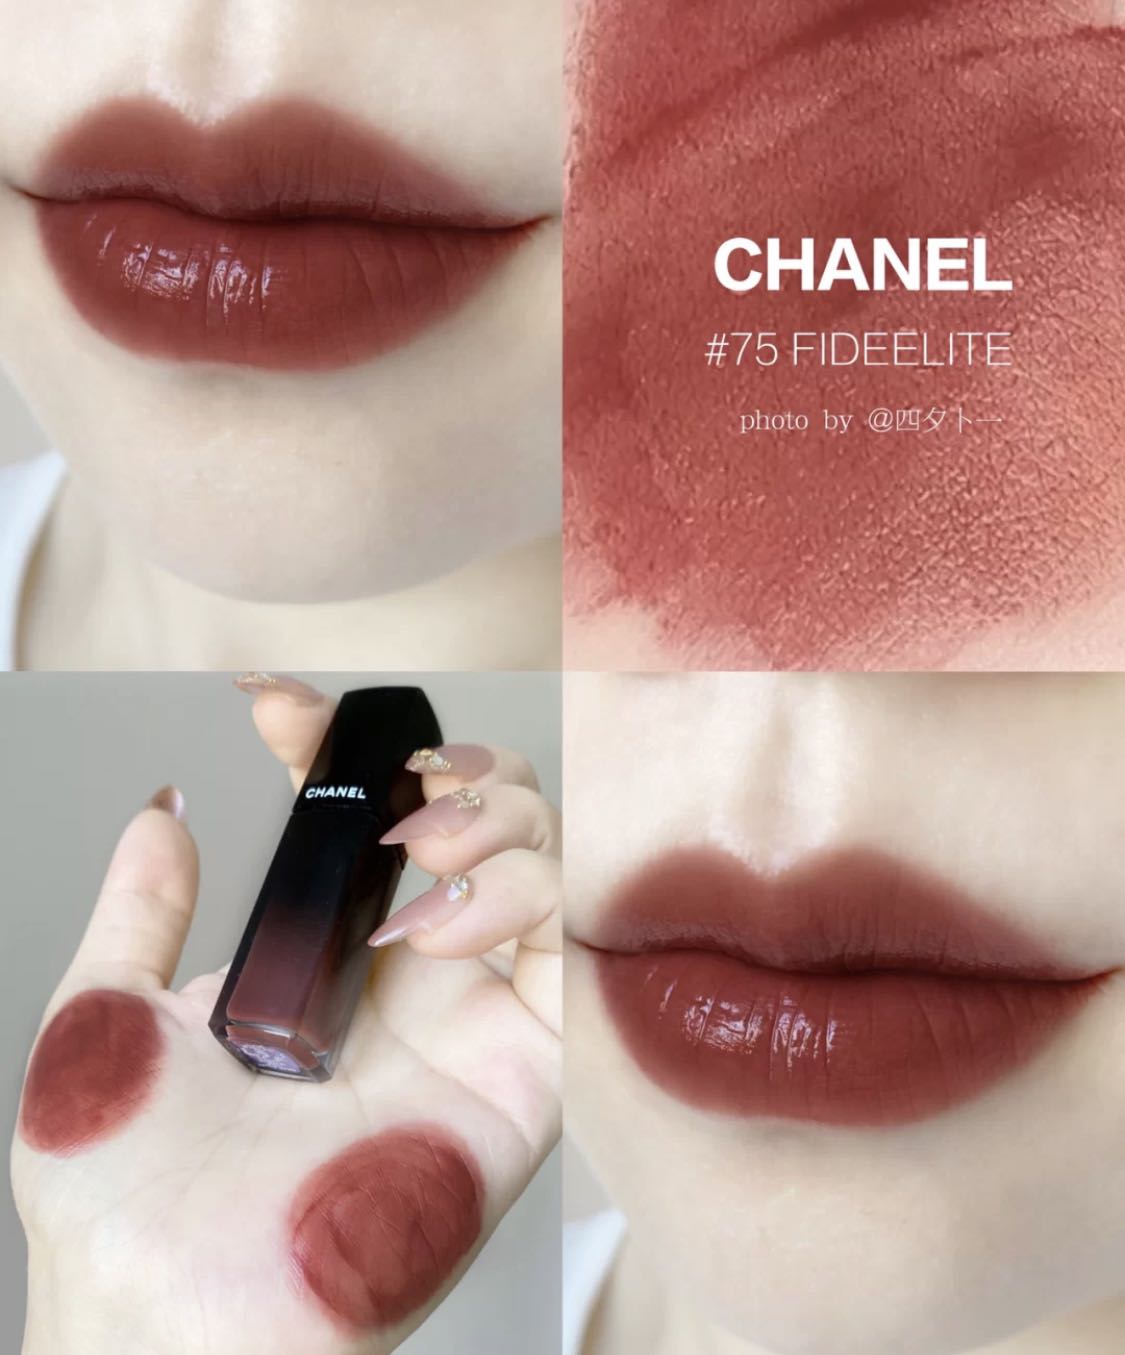 Chanel 炫光唇釉75, 美容＆個人護理, 健康及美容- 皮膚護理, 化妝品